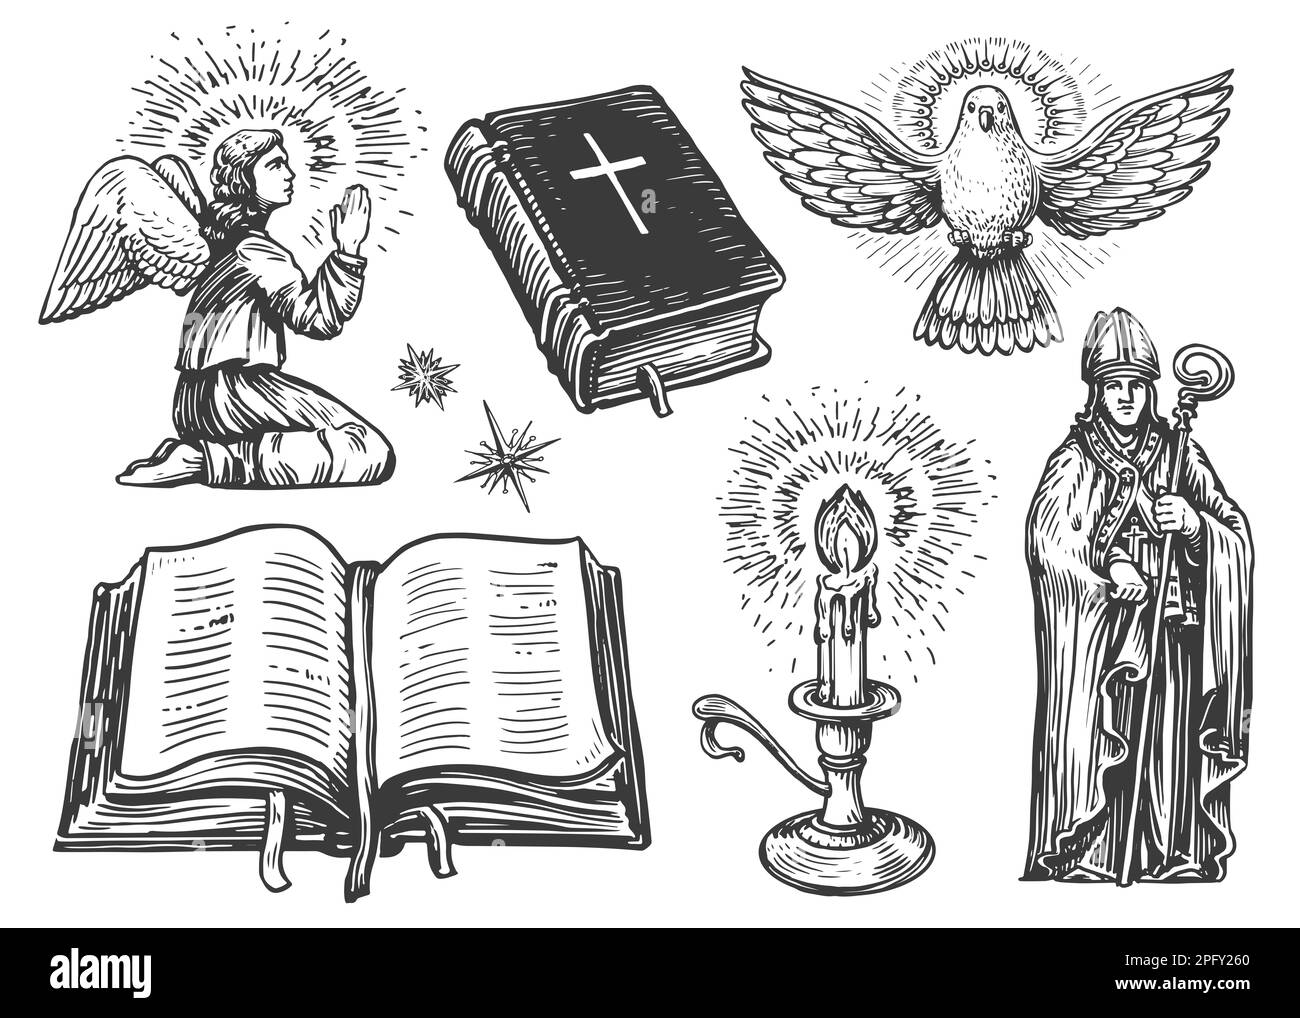 Ange de prière avec des ailes, livre de la Sainte Bible, bougie allumée, messager de colombe volante, évêque. Jeu d'illustrations de religion Banque D'Images